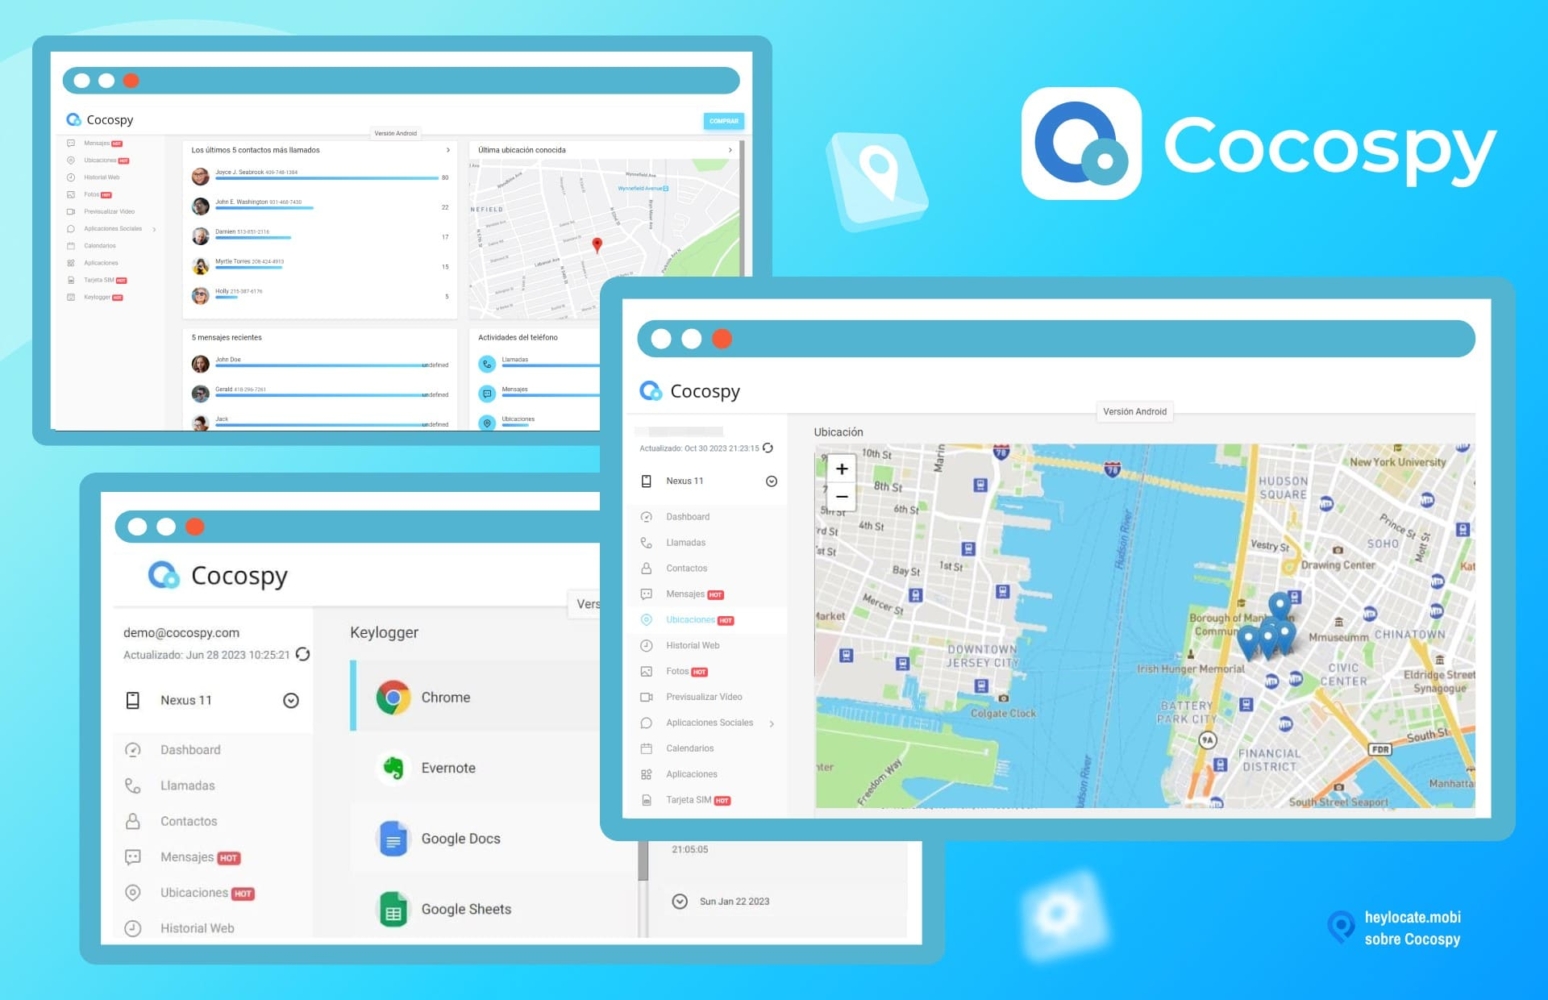 Un collage que muestra varias capturas de pantalla de la interfaz de la aplicación Cocospy. Las imágenes incluyen diferentes paneles, como un panel de control, un rastreador de ubicación con un mapa y los chats de WhatsApp más utilizados.